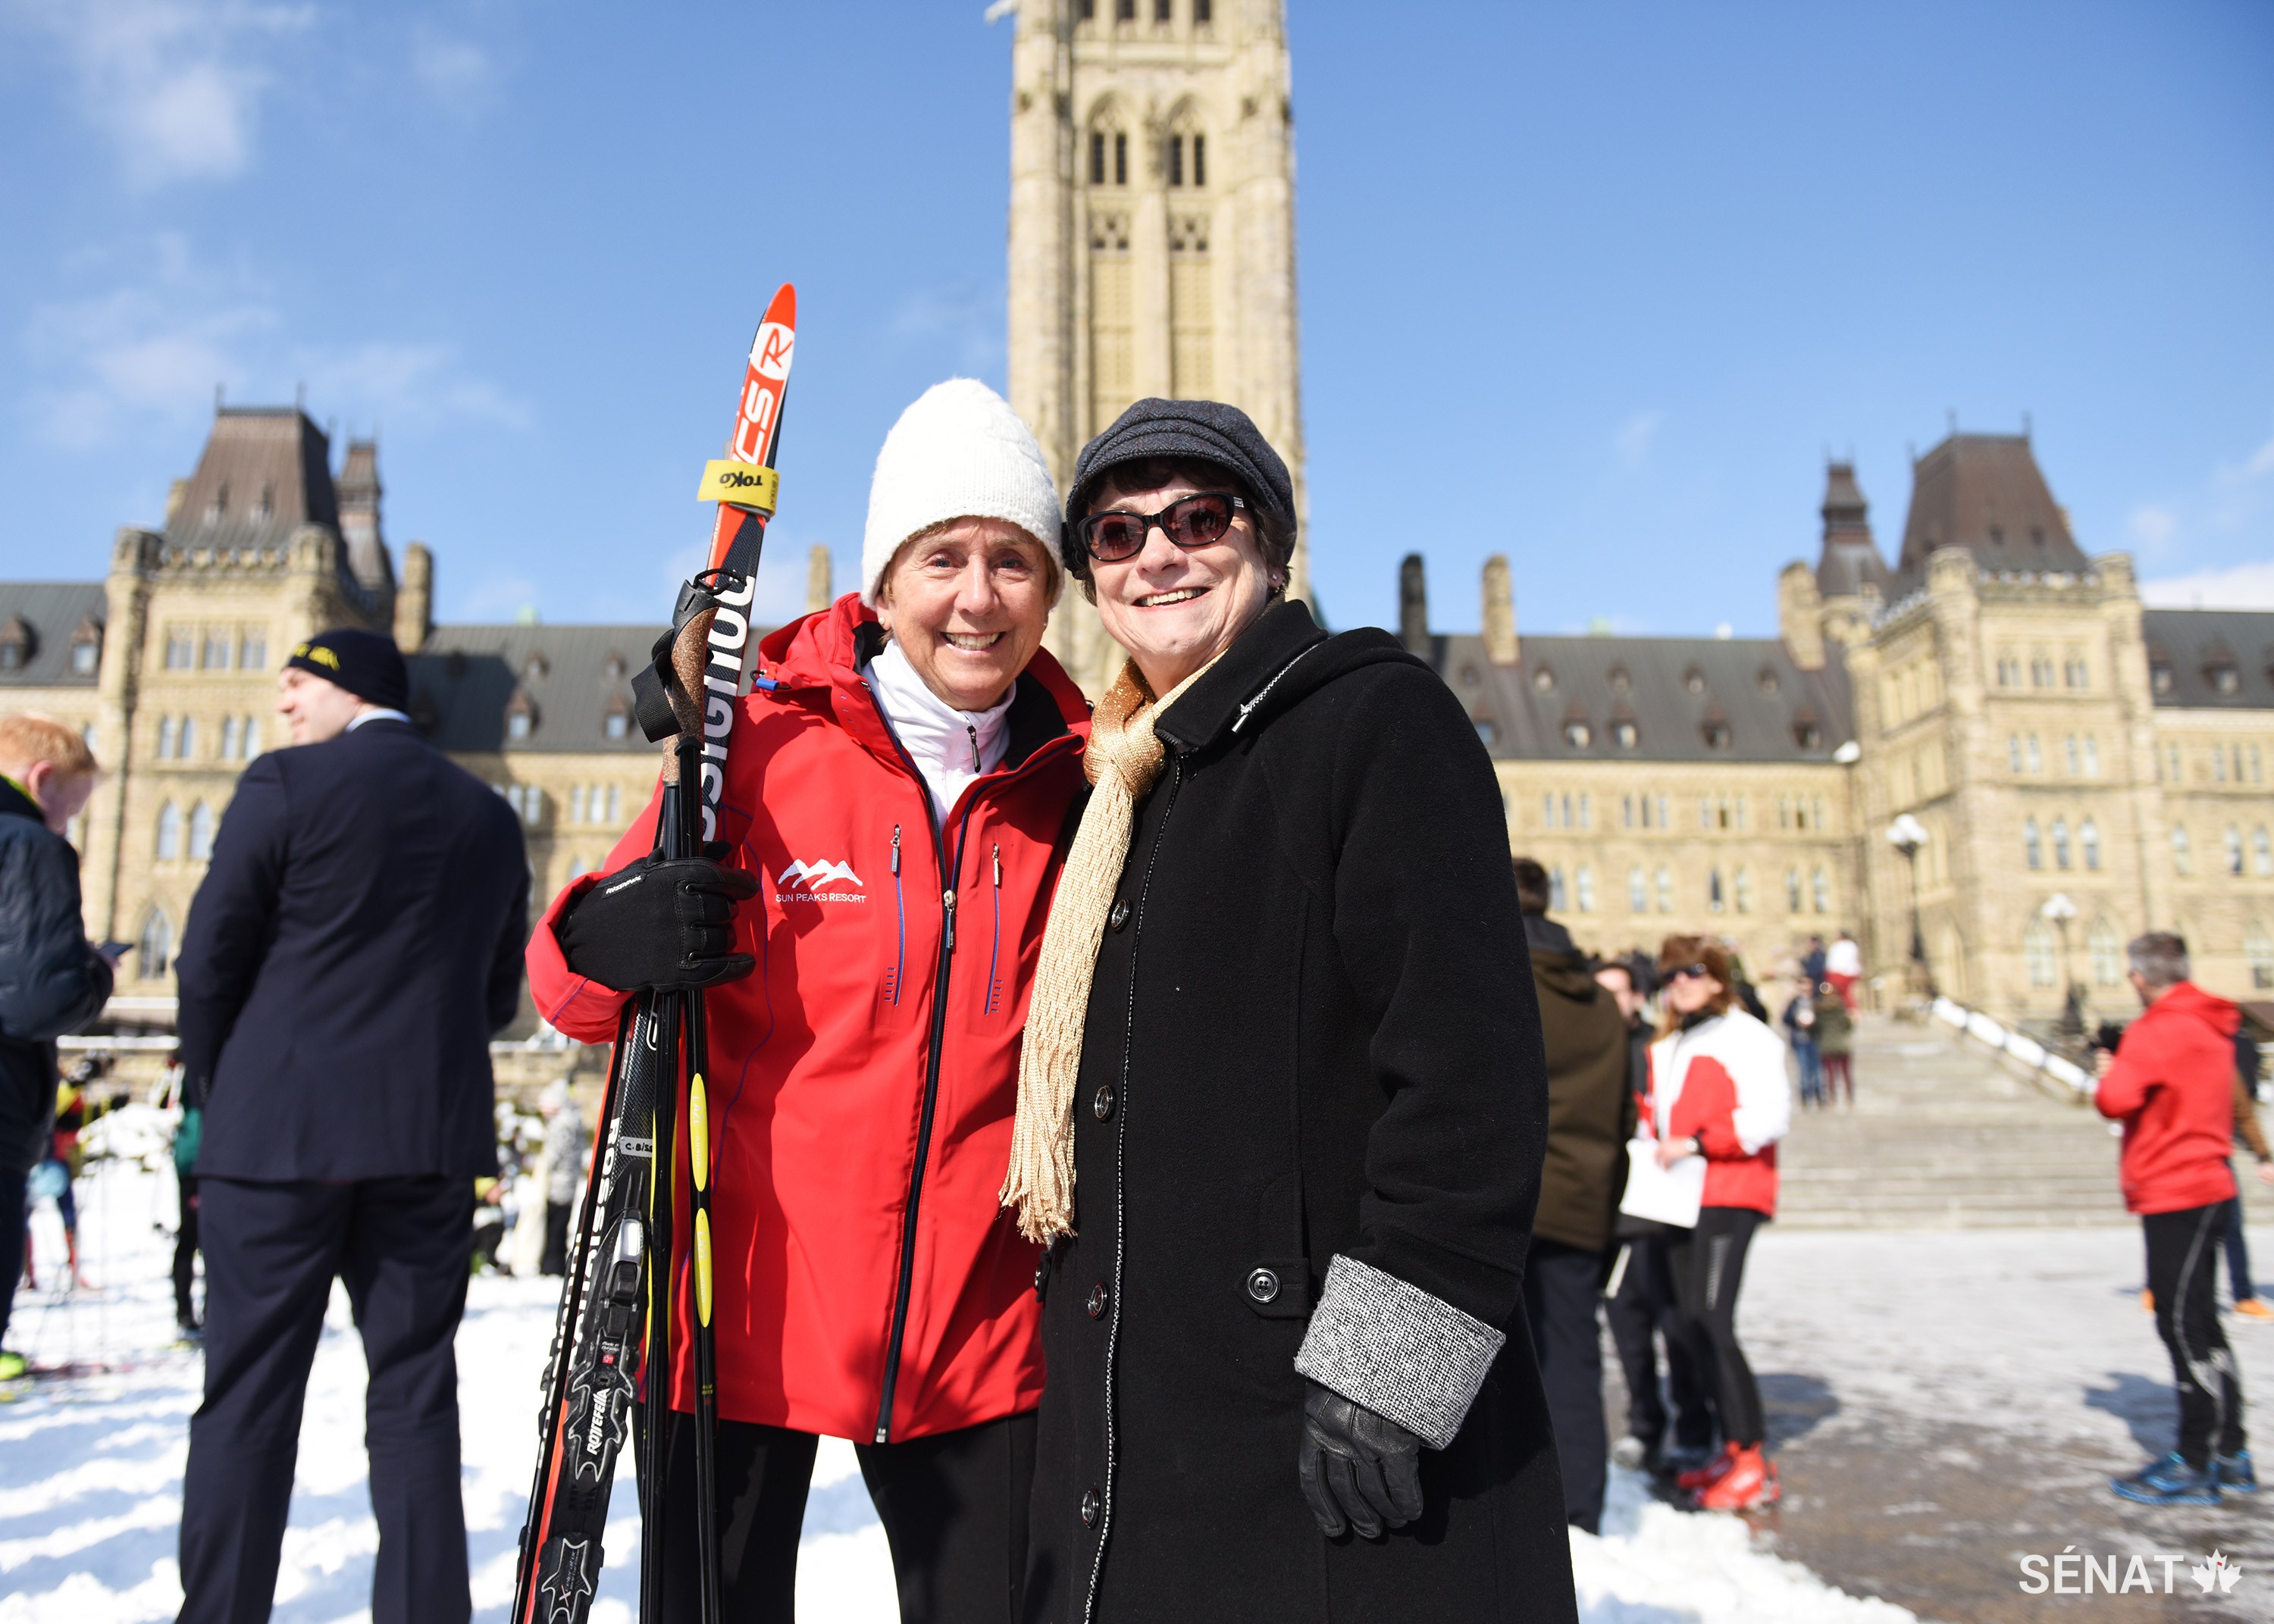 Les sénatrices Nancy Greene Raine et Diane Griffin profitent du soleil de février à Ottawa tout en témoignant de leur appui pour le sport, la santé et la bonne forme physique.